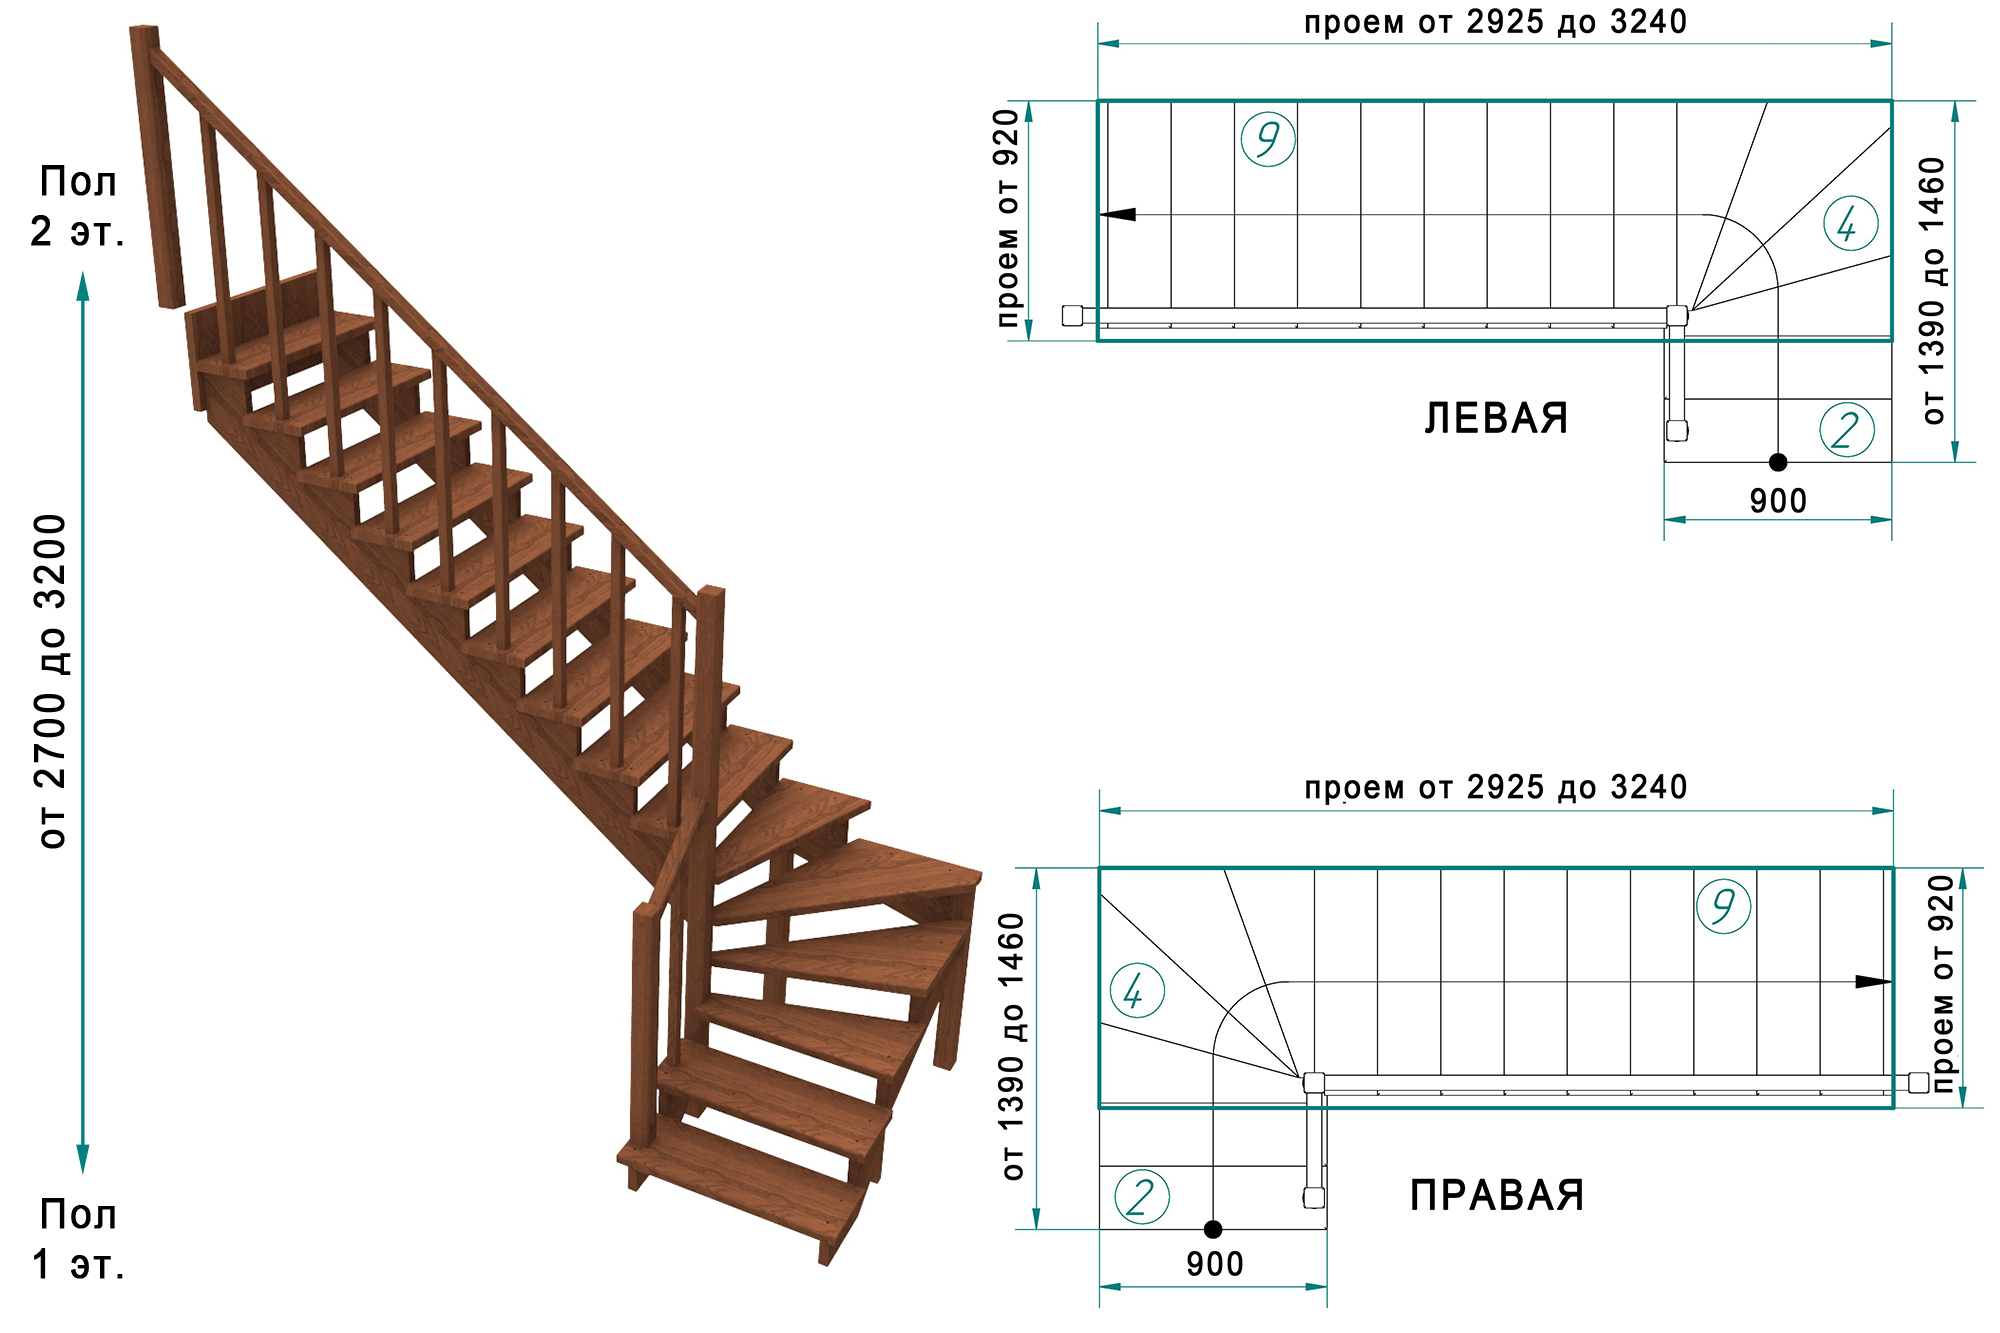 Лестницы на второй этаж в частном доме своими руками: схема, типы конструкций, материалы изготовления; размеры ступеней, угол наклона и их расчет; обзор готовых моделей, как сделать своими руками